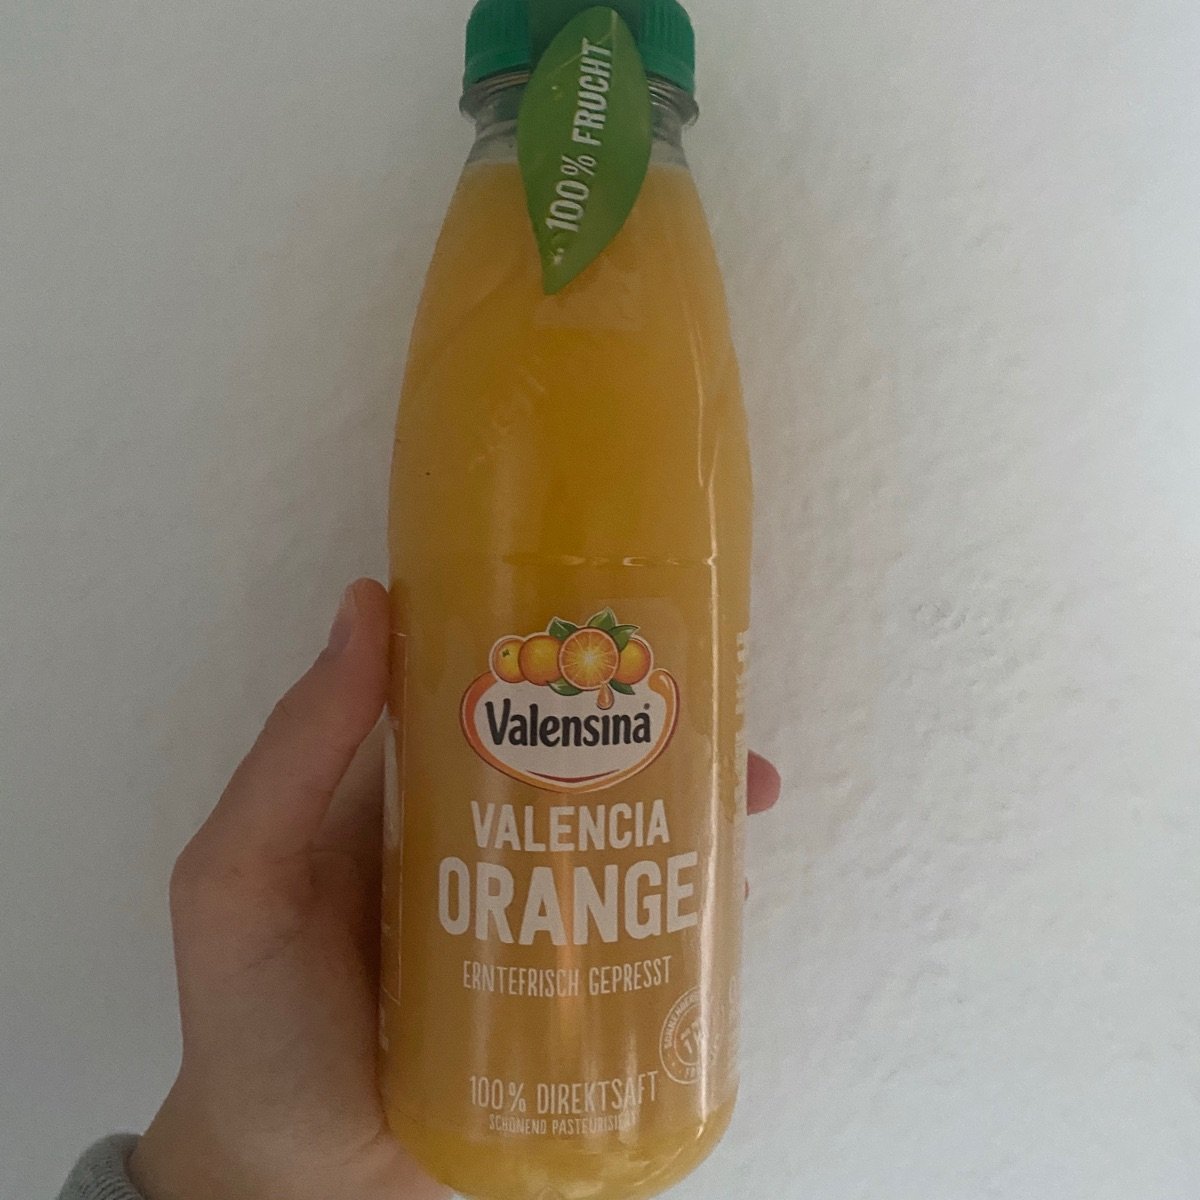 abillion Valensina orange valensina | Reviews